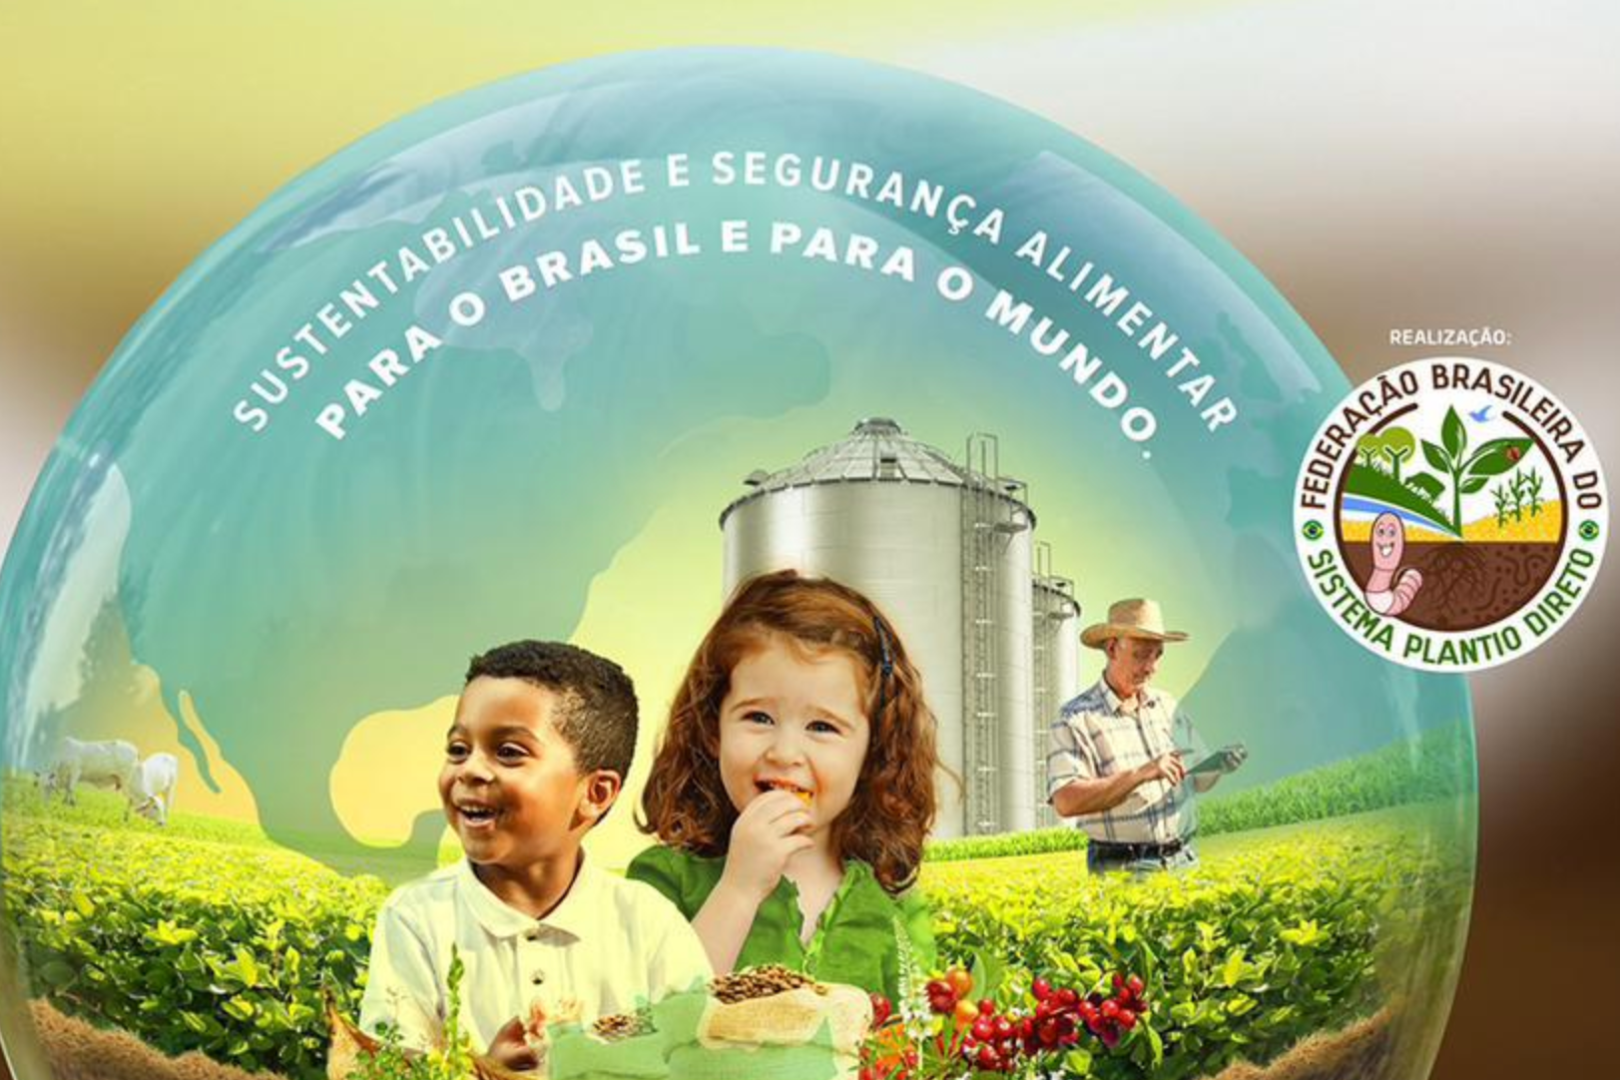 Imagem de duas crianças e um agricultor numa fazenda com o texto "Sustentabilidade e segurança alimentar para o Brasil e para o mundo"